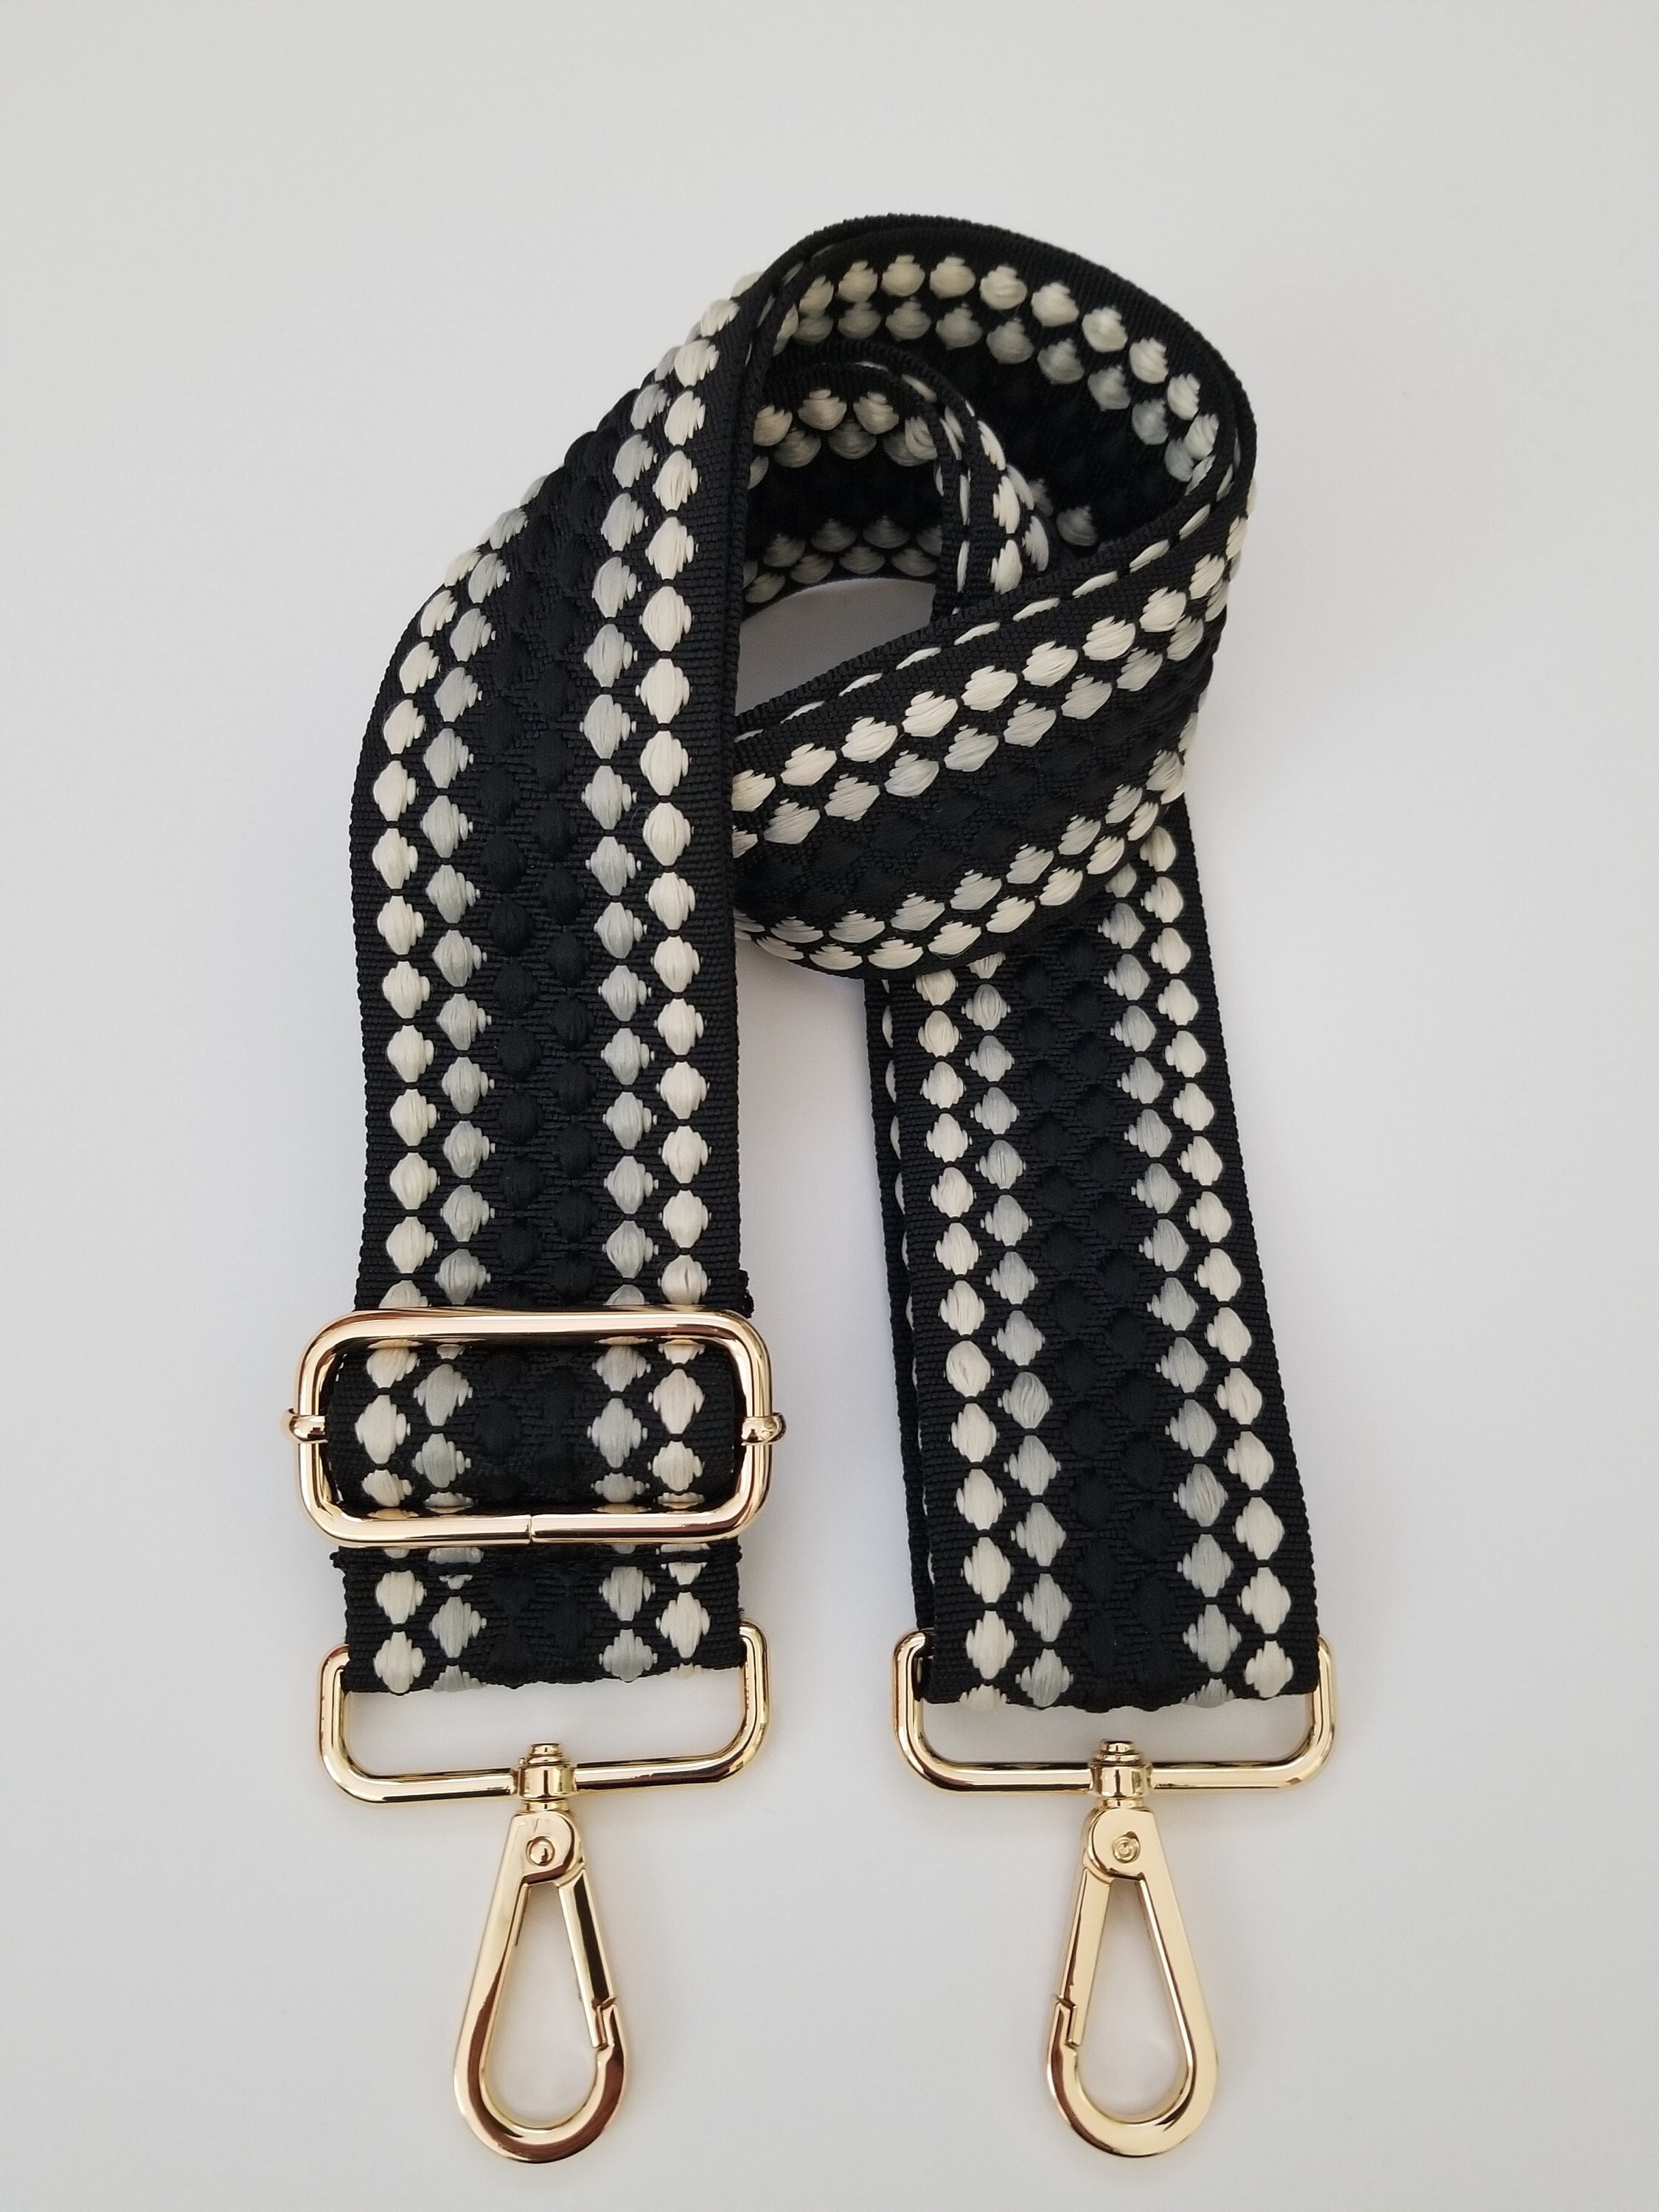 Luxurious Satin Nylon Strap for Purses / Handbags - Titanium Gray #19 Gold-Tone